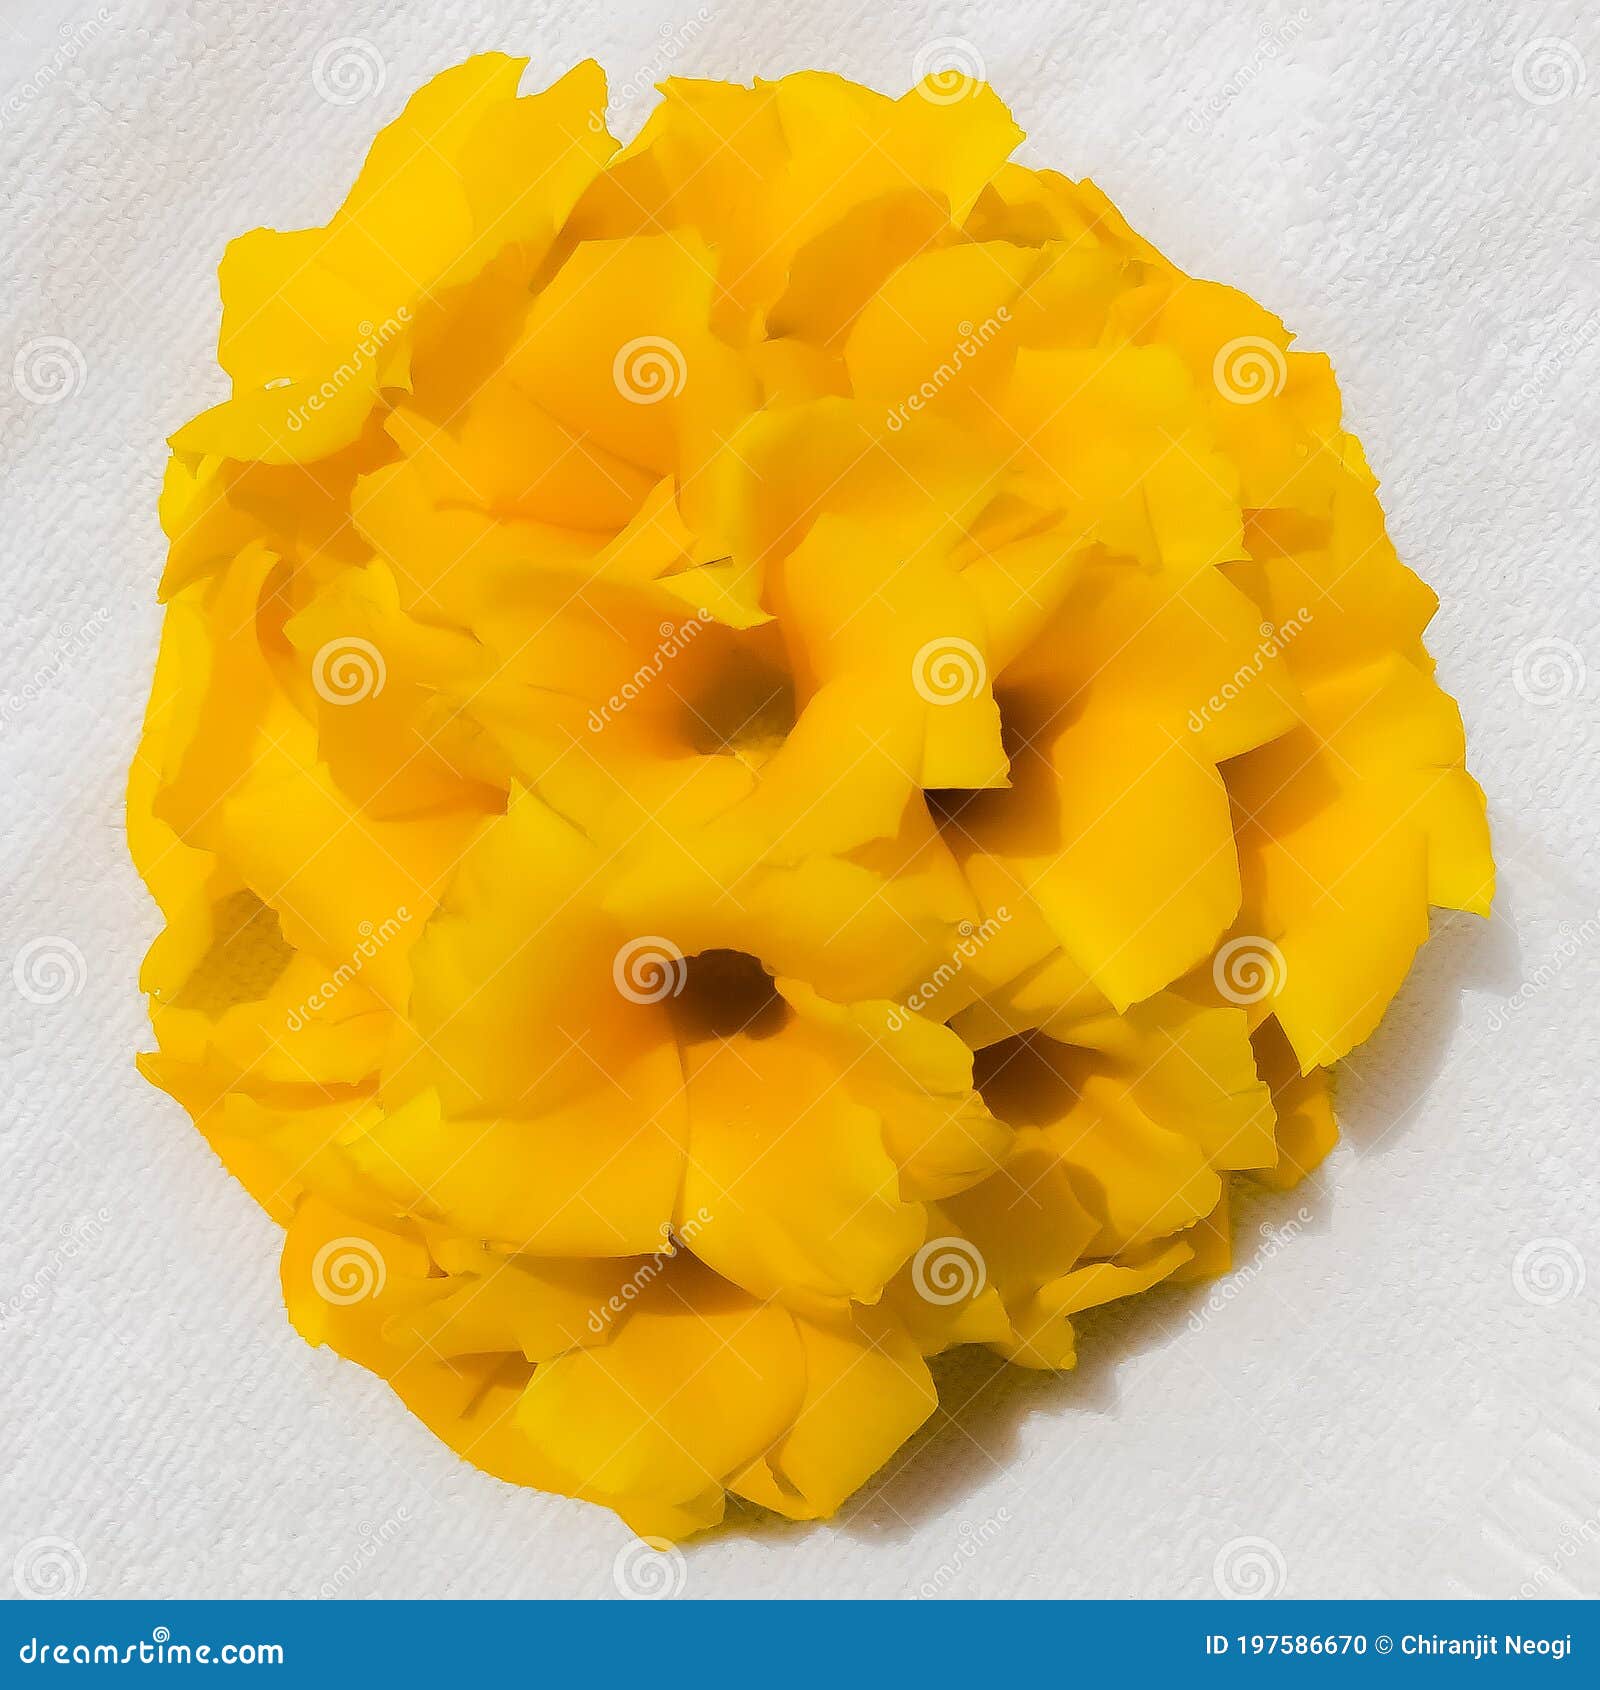 Kolke or Cascabela Thevetia Flowers Stock Photo - Image of dessert ...